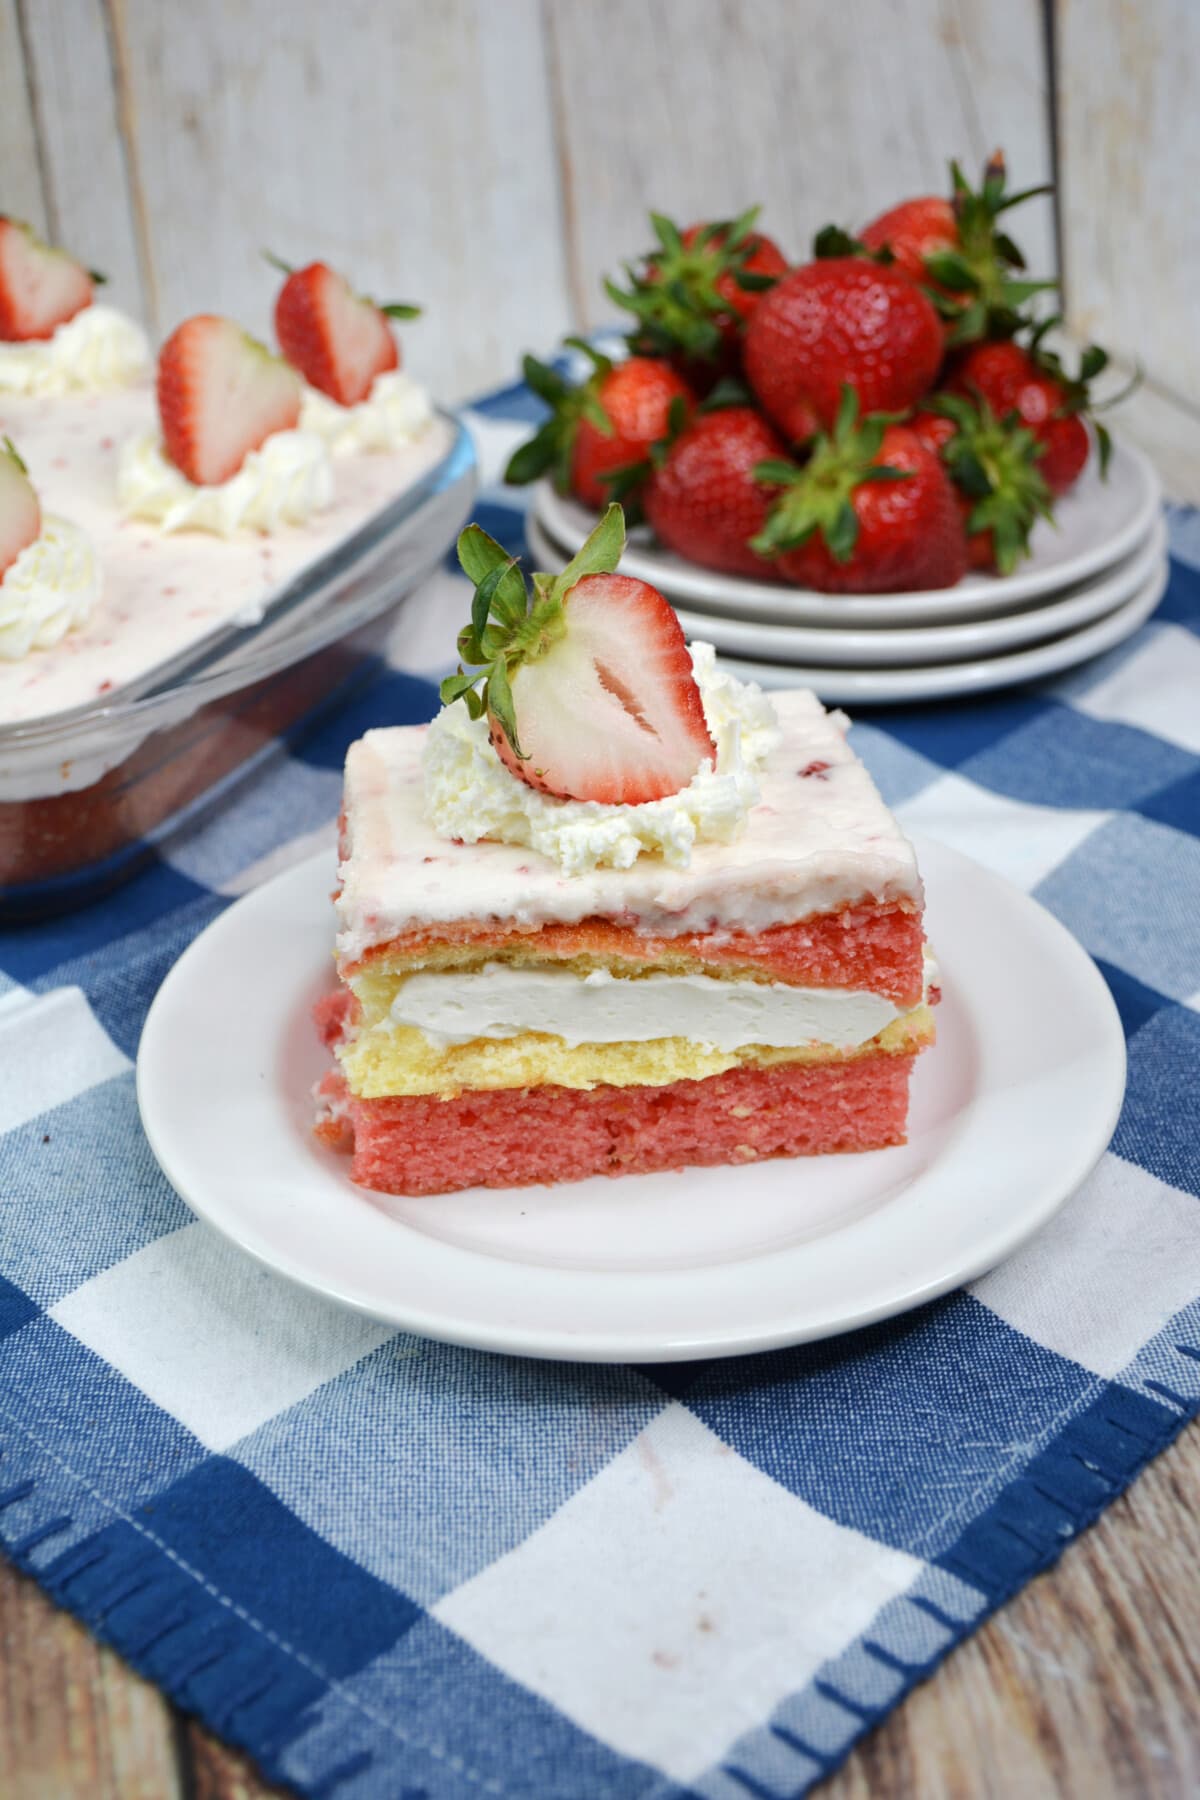 草莓twinkie蛋糕的顶部GydF4y2Ba